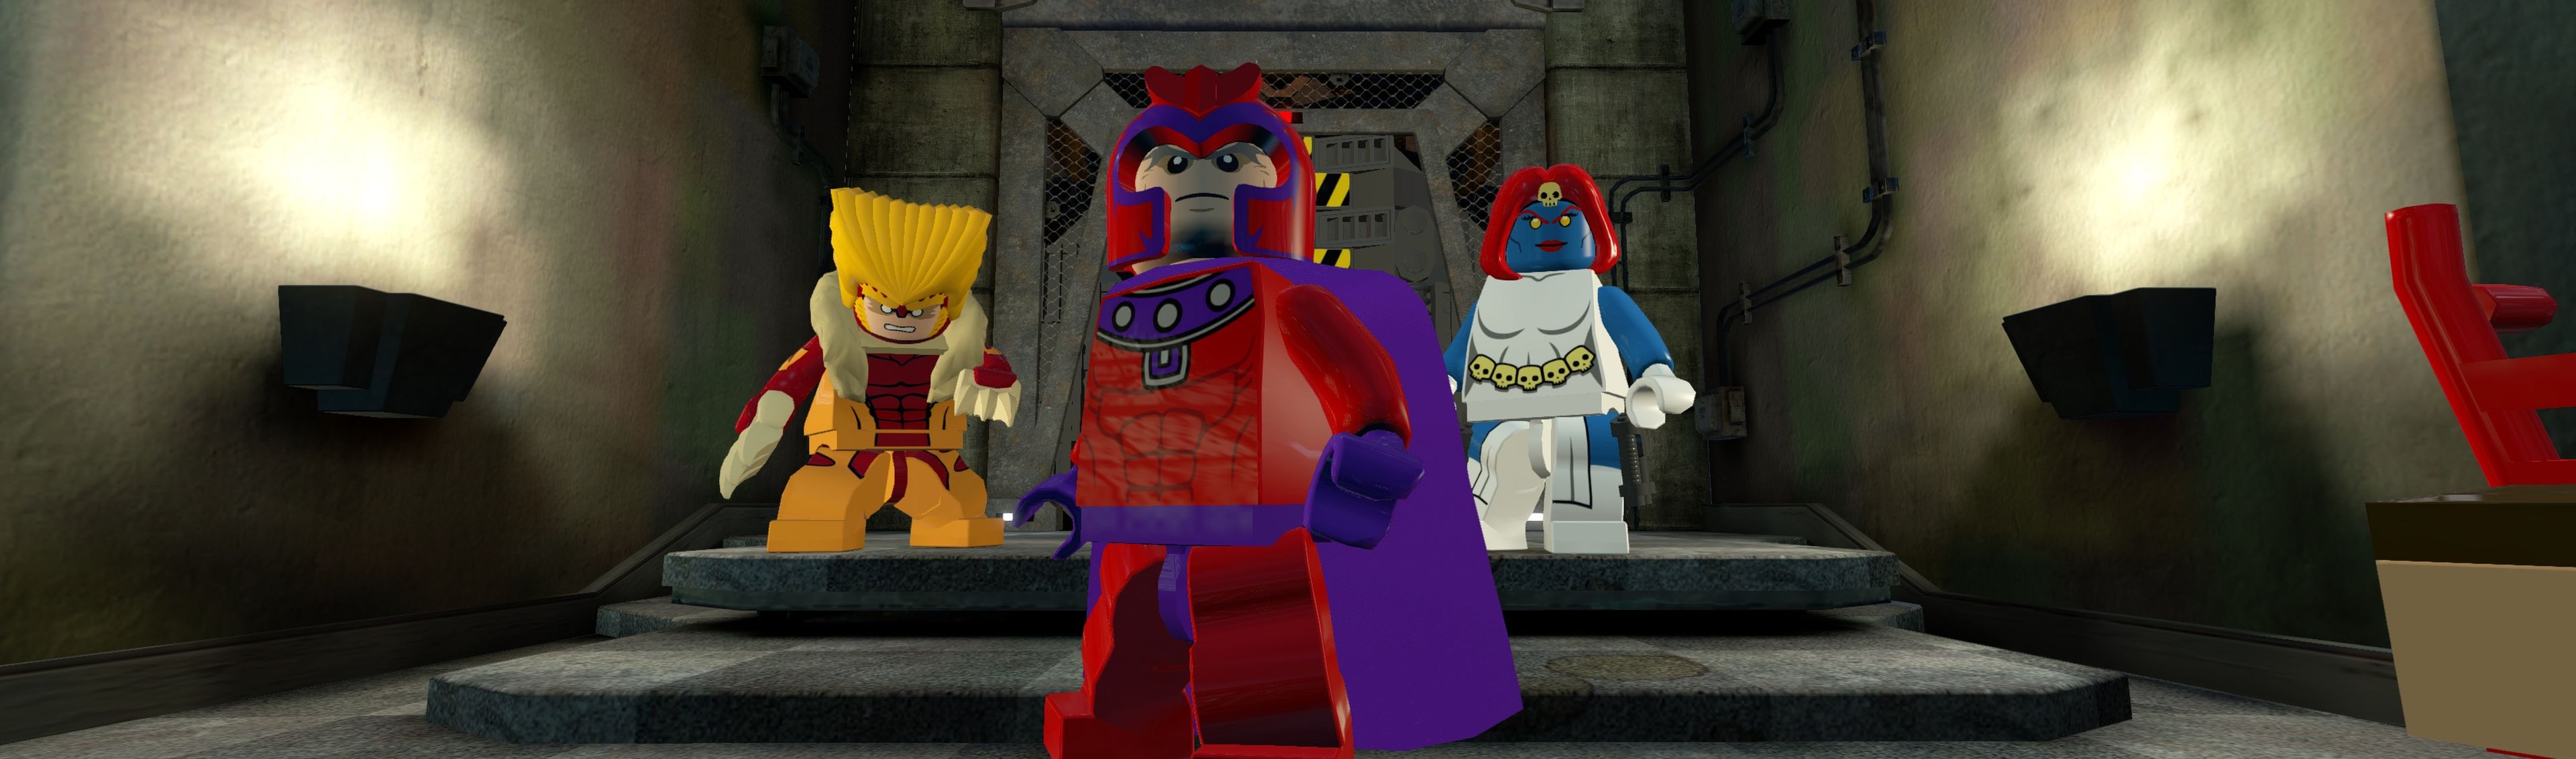 Avance de LEGO Marvel Super Heroes